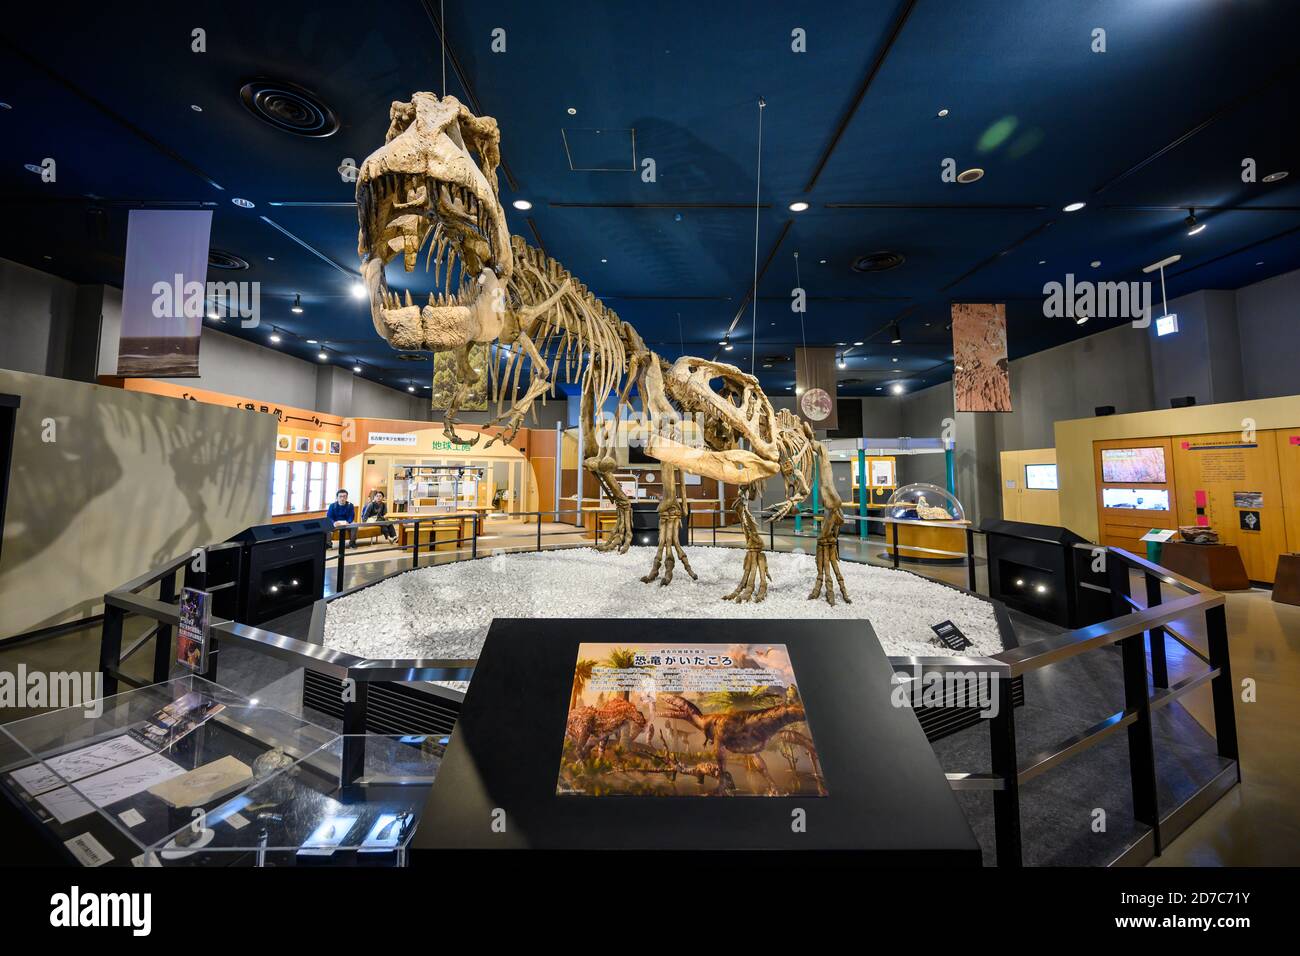 Nagoya / Japon - novembre 27 2019 : squelette de dinosaures dans la salle d'exposition scientifique du Musée des Sciences de la ville de Nagoya c'est une destination touristique populaire. Banque D'Images